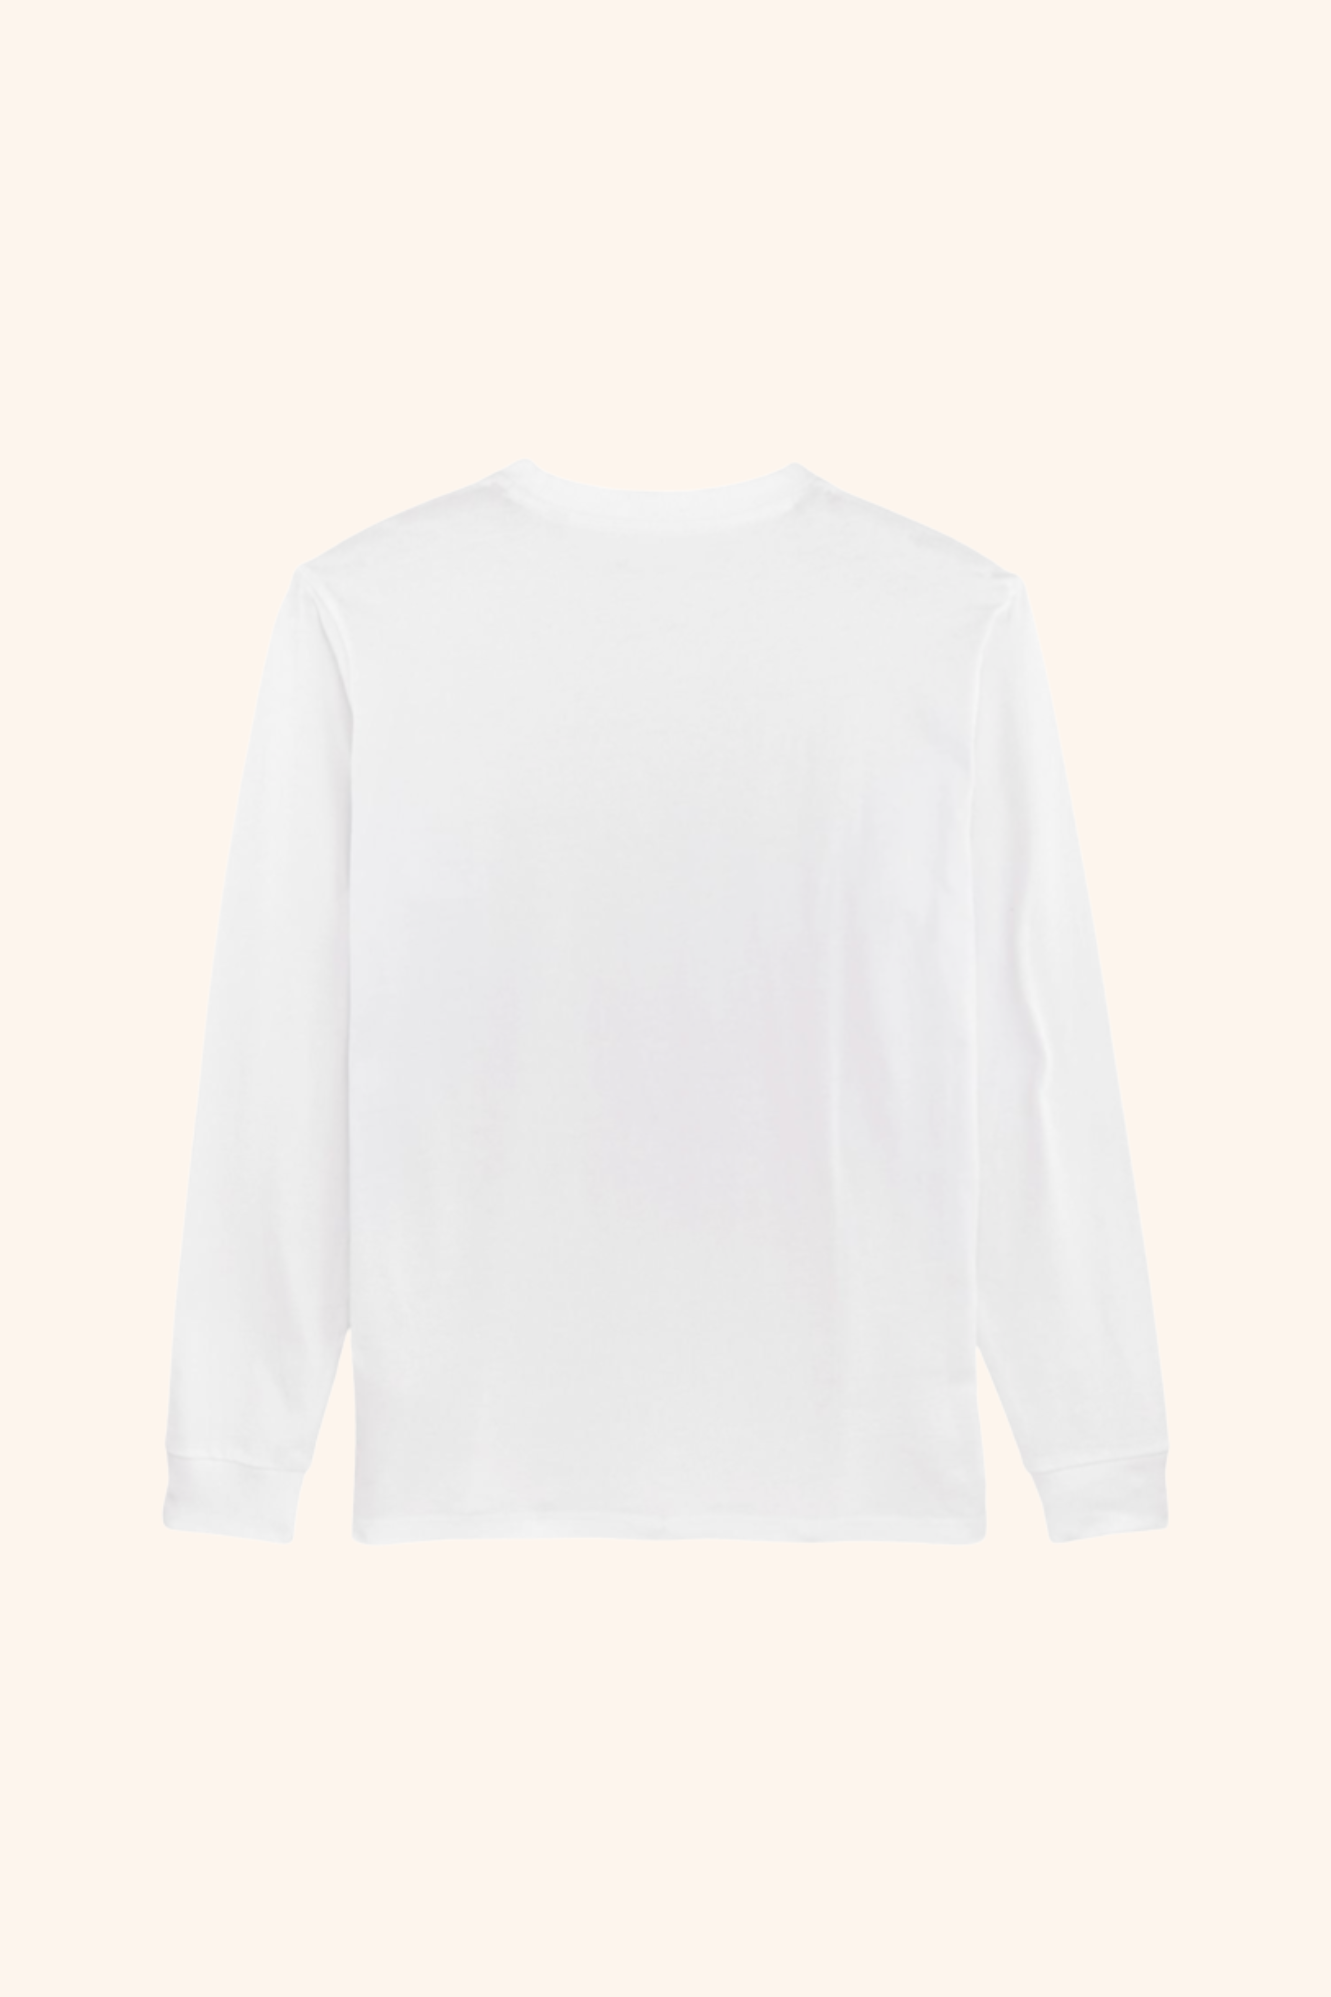 gOOOders Long Sleeve White T-Shirt